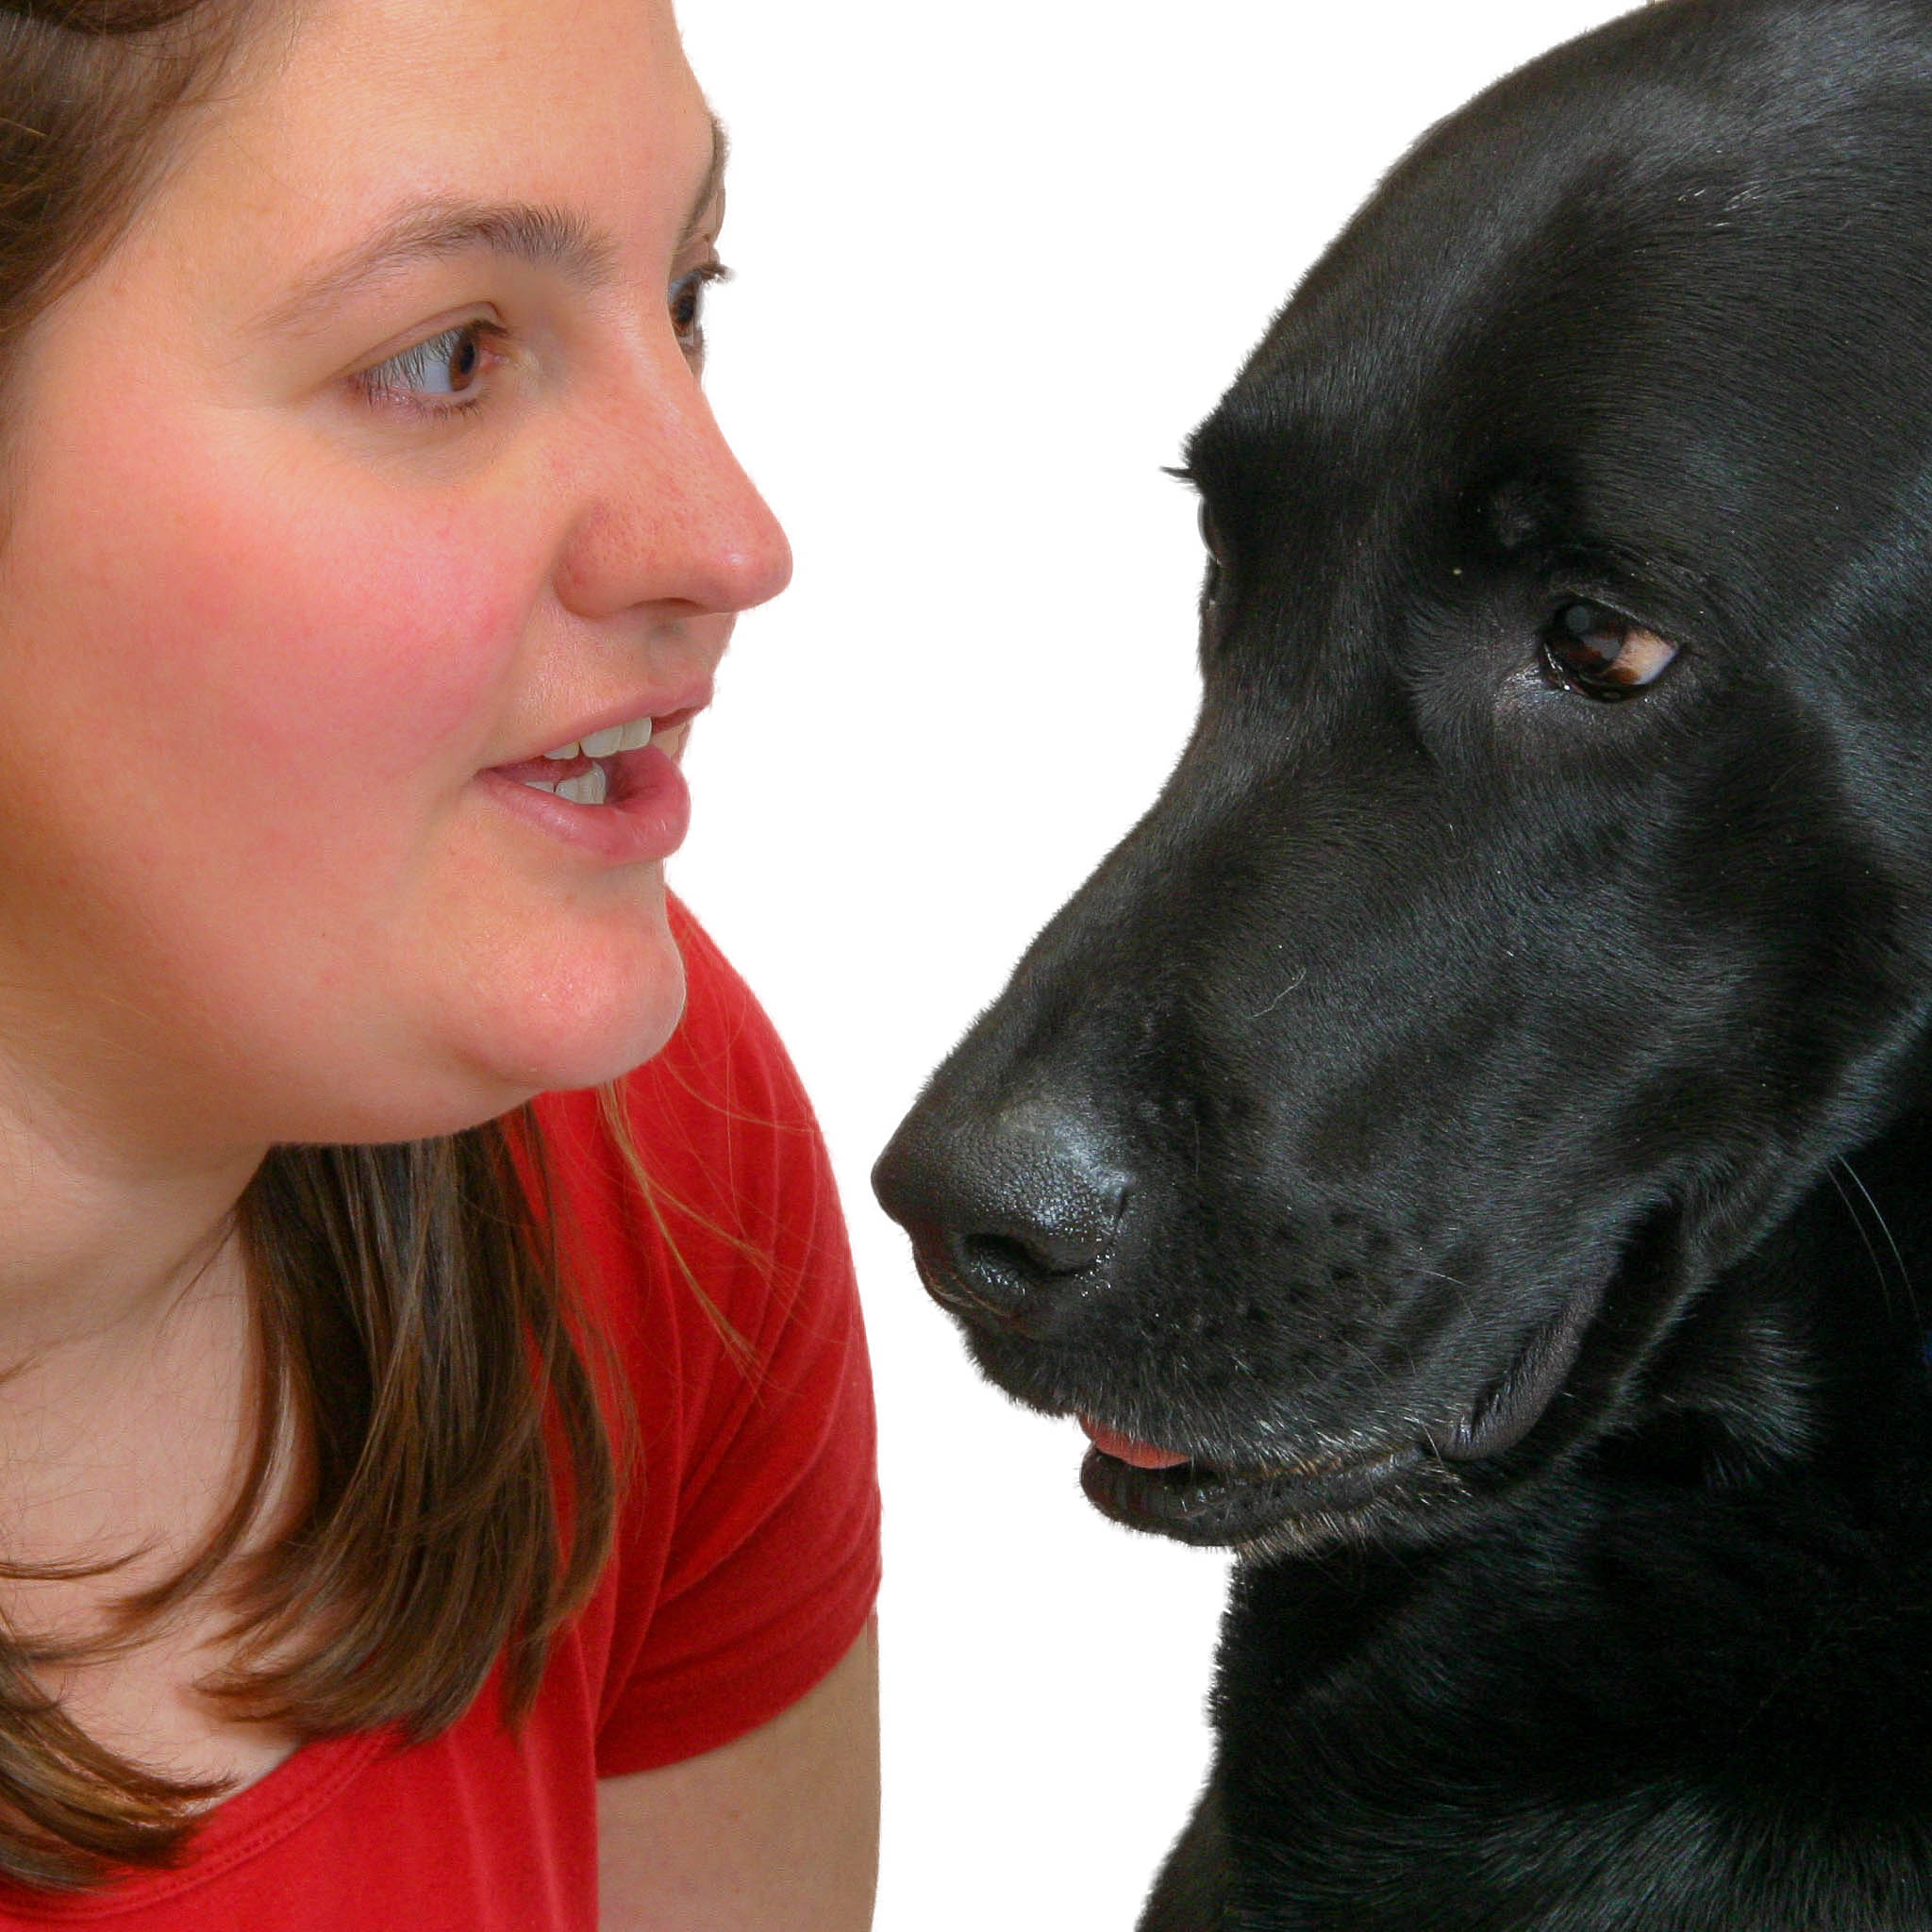 Frau spricht mit Hund - gemeinsame Sprache Mensch Hund